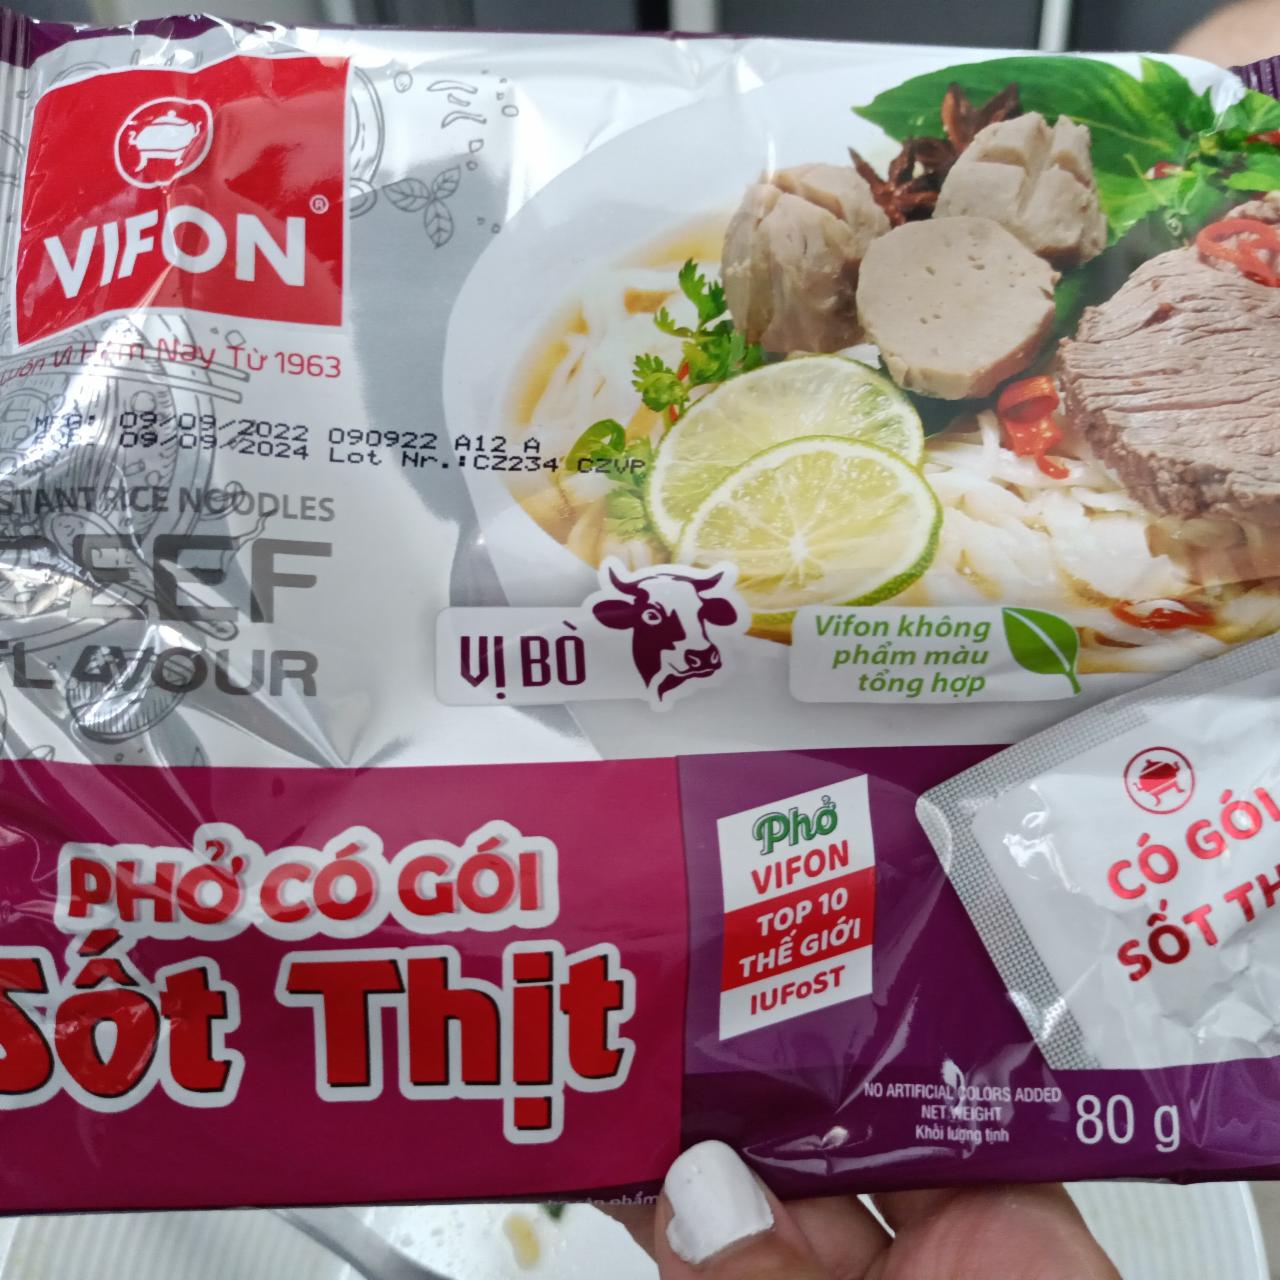 Fotografie - Phở Có Gói Xốt Thịt Vị Bò Beef flavour Vifon